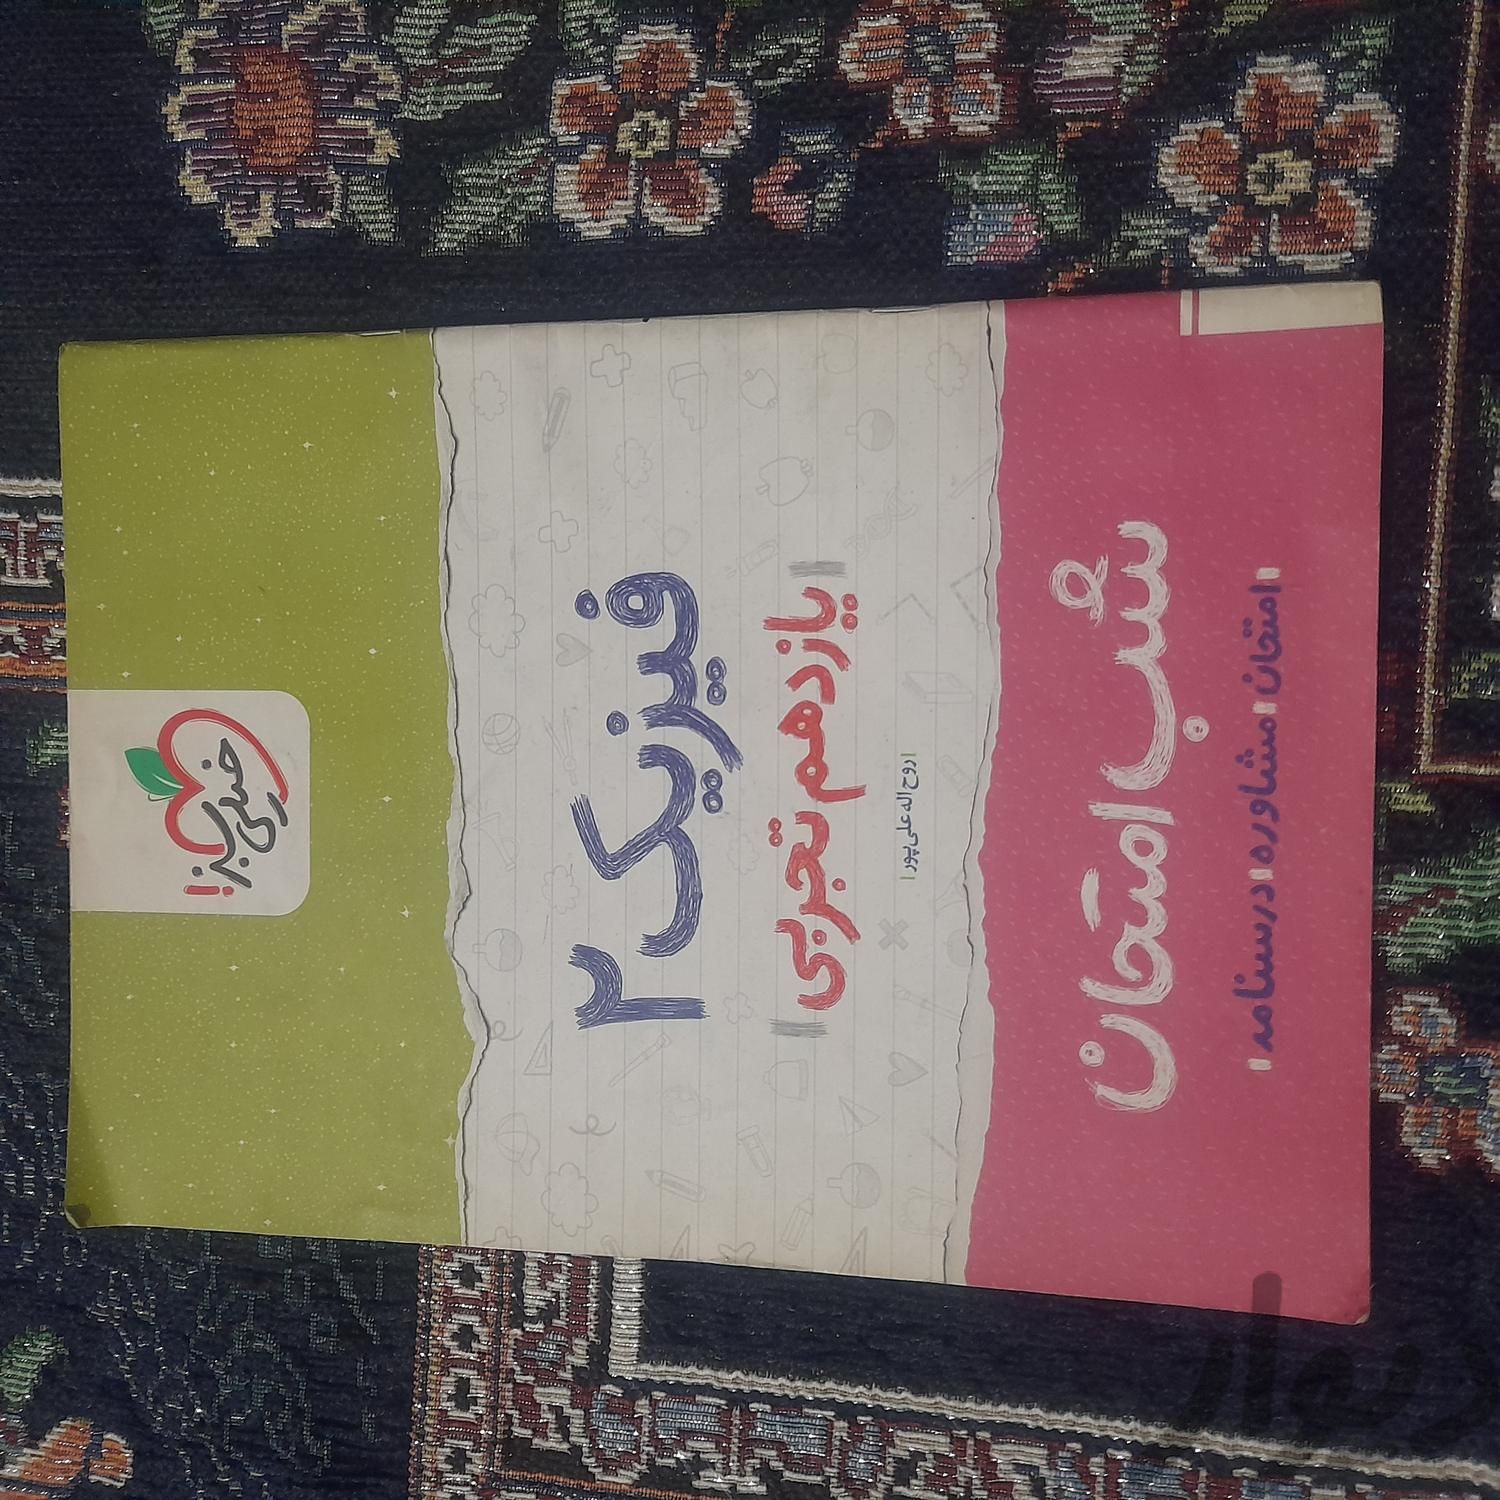 کتاب راه نهایی و خیلی سبز|کتاب و مجله آموزشی|تهران, پاتریس لومومبا|دیوار